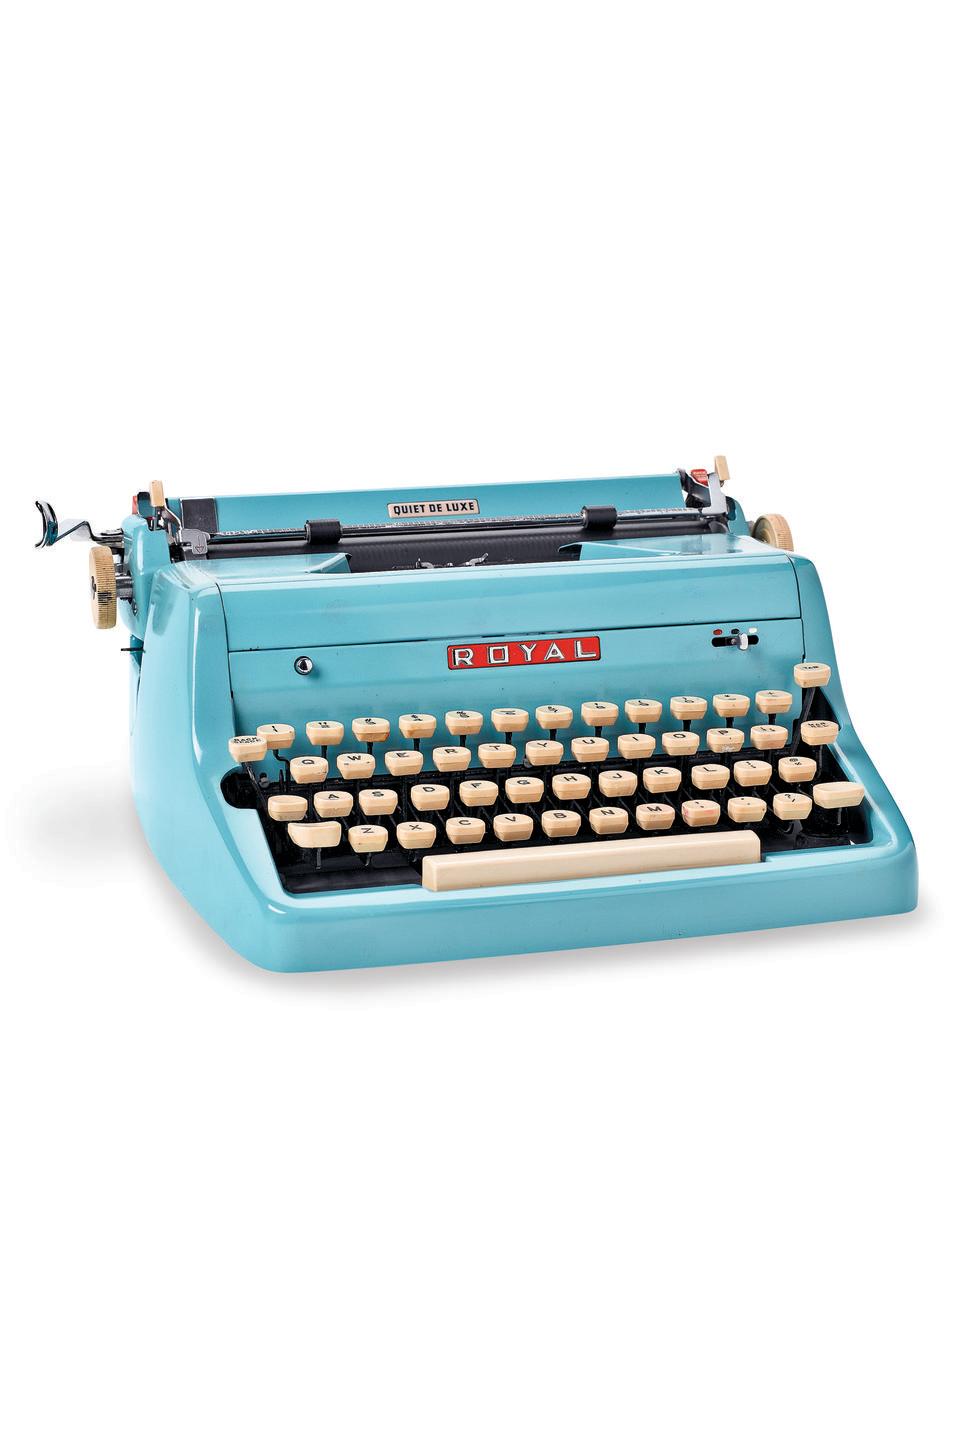 1950s Royal Typewriter Quiet de Luxe